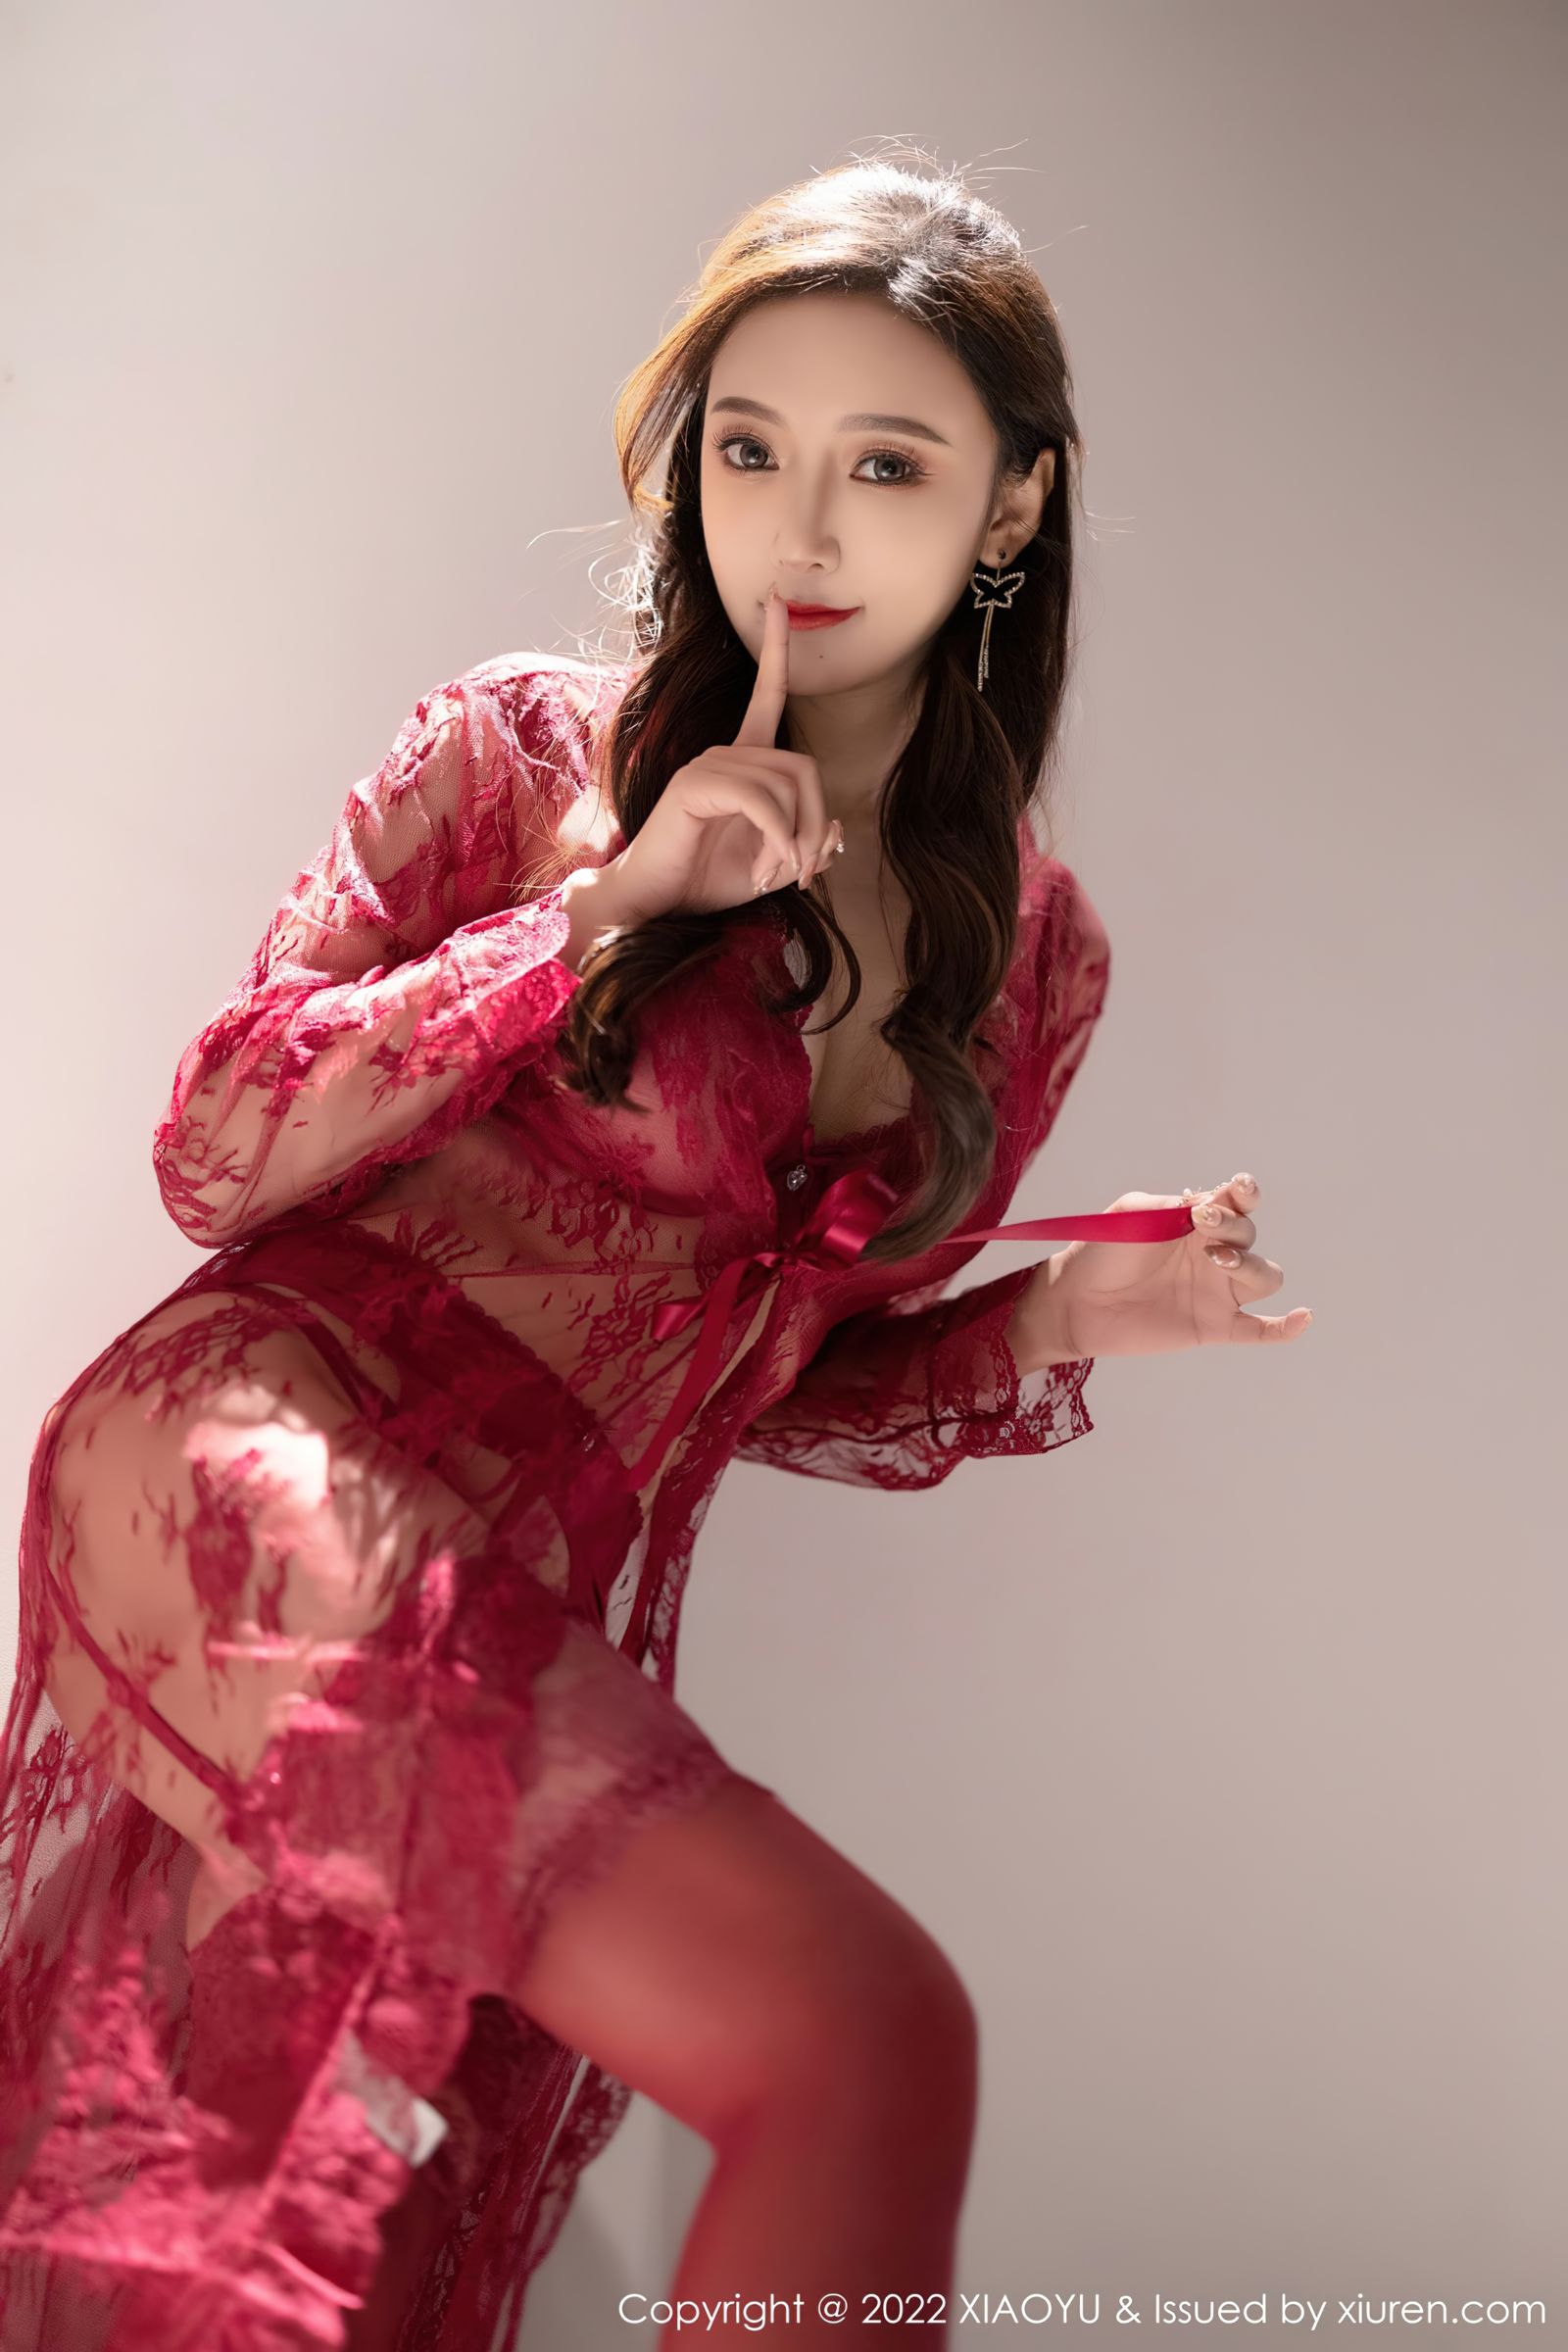 [XIAOYU语画界]-Vol.699-王馨瑶yanni-惠州旅拍-红色蕾丝内衣搭配红色丝袜-套图之家